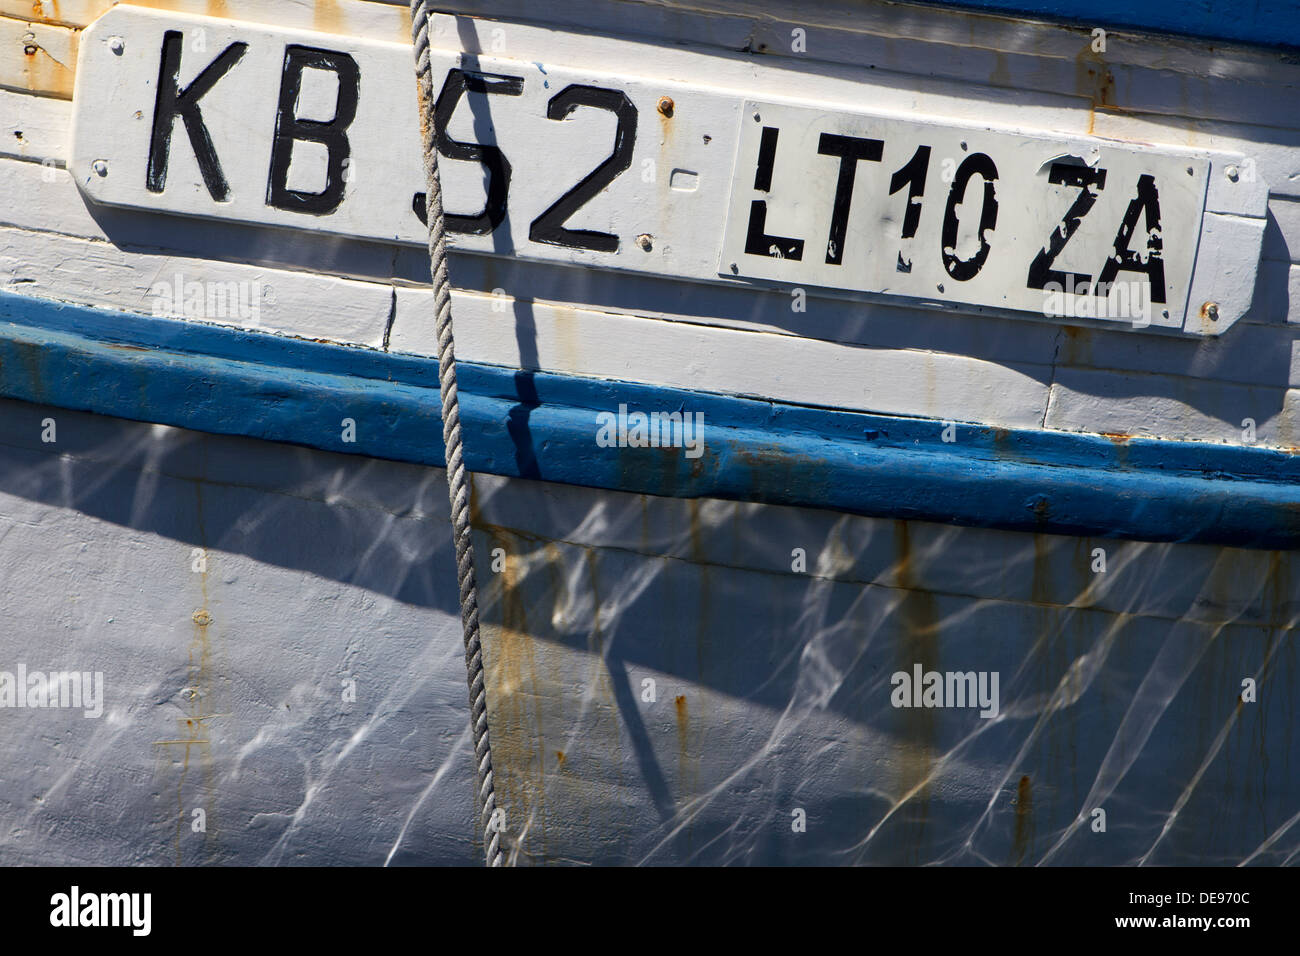 Kalk Bay fishing vessel registration number. Stock Photo